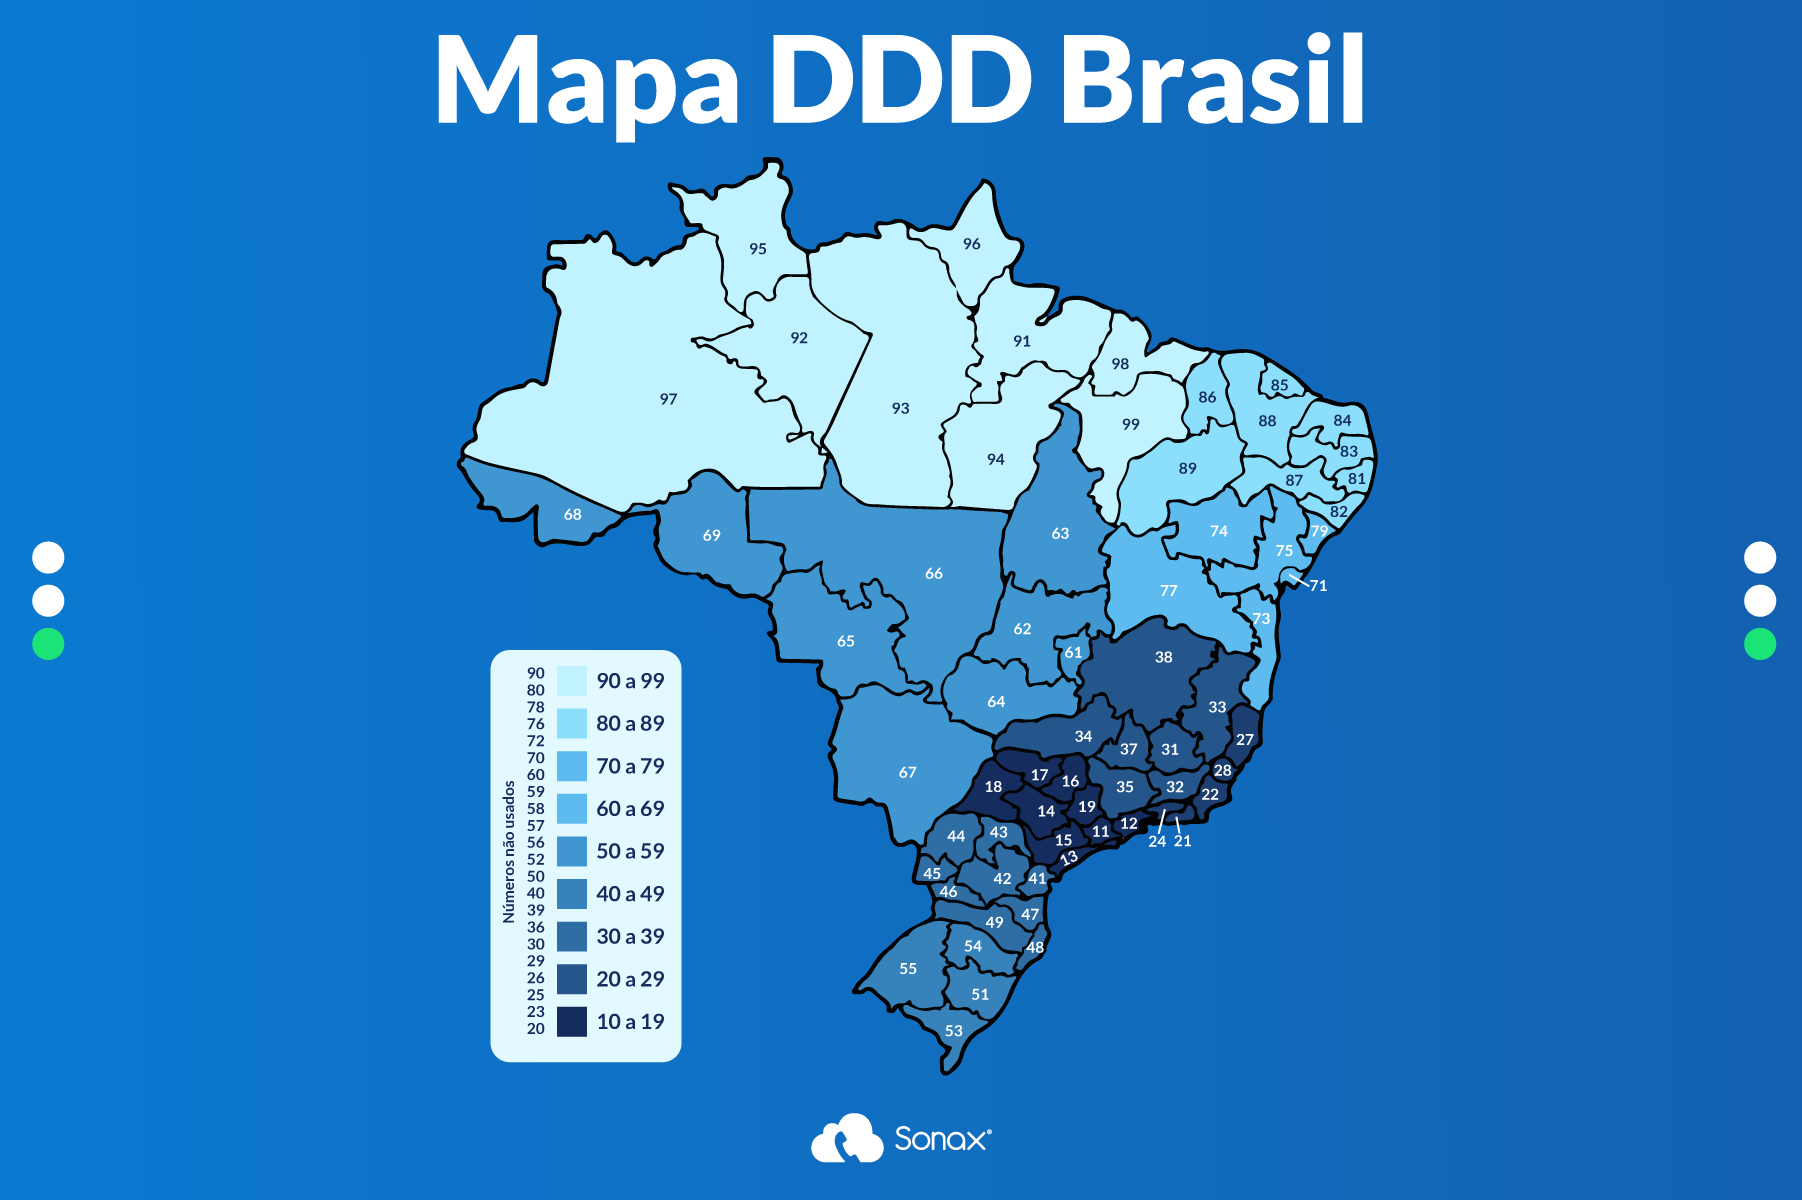 DDDs de Todo Brasil: Confira Lista Atualizada - Notícias Concursos